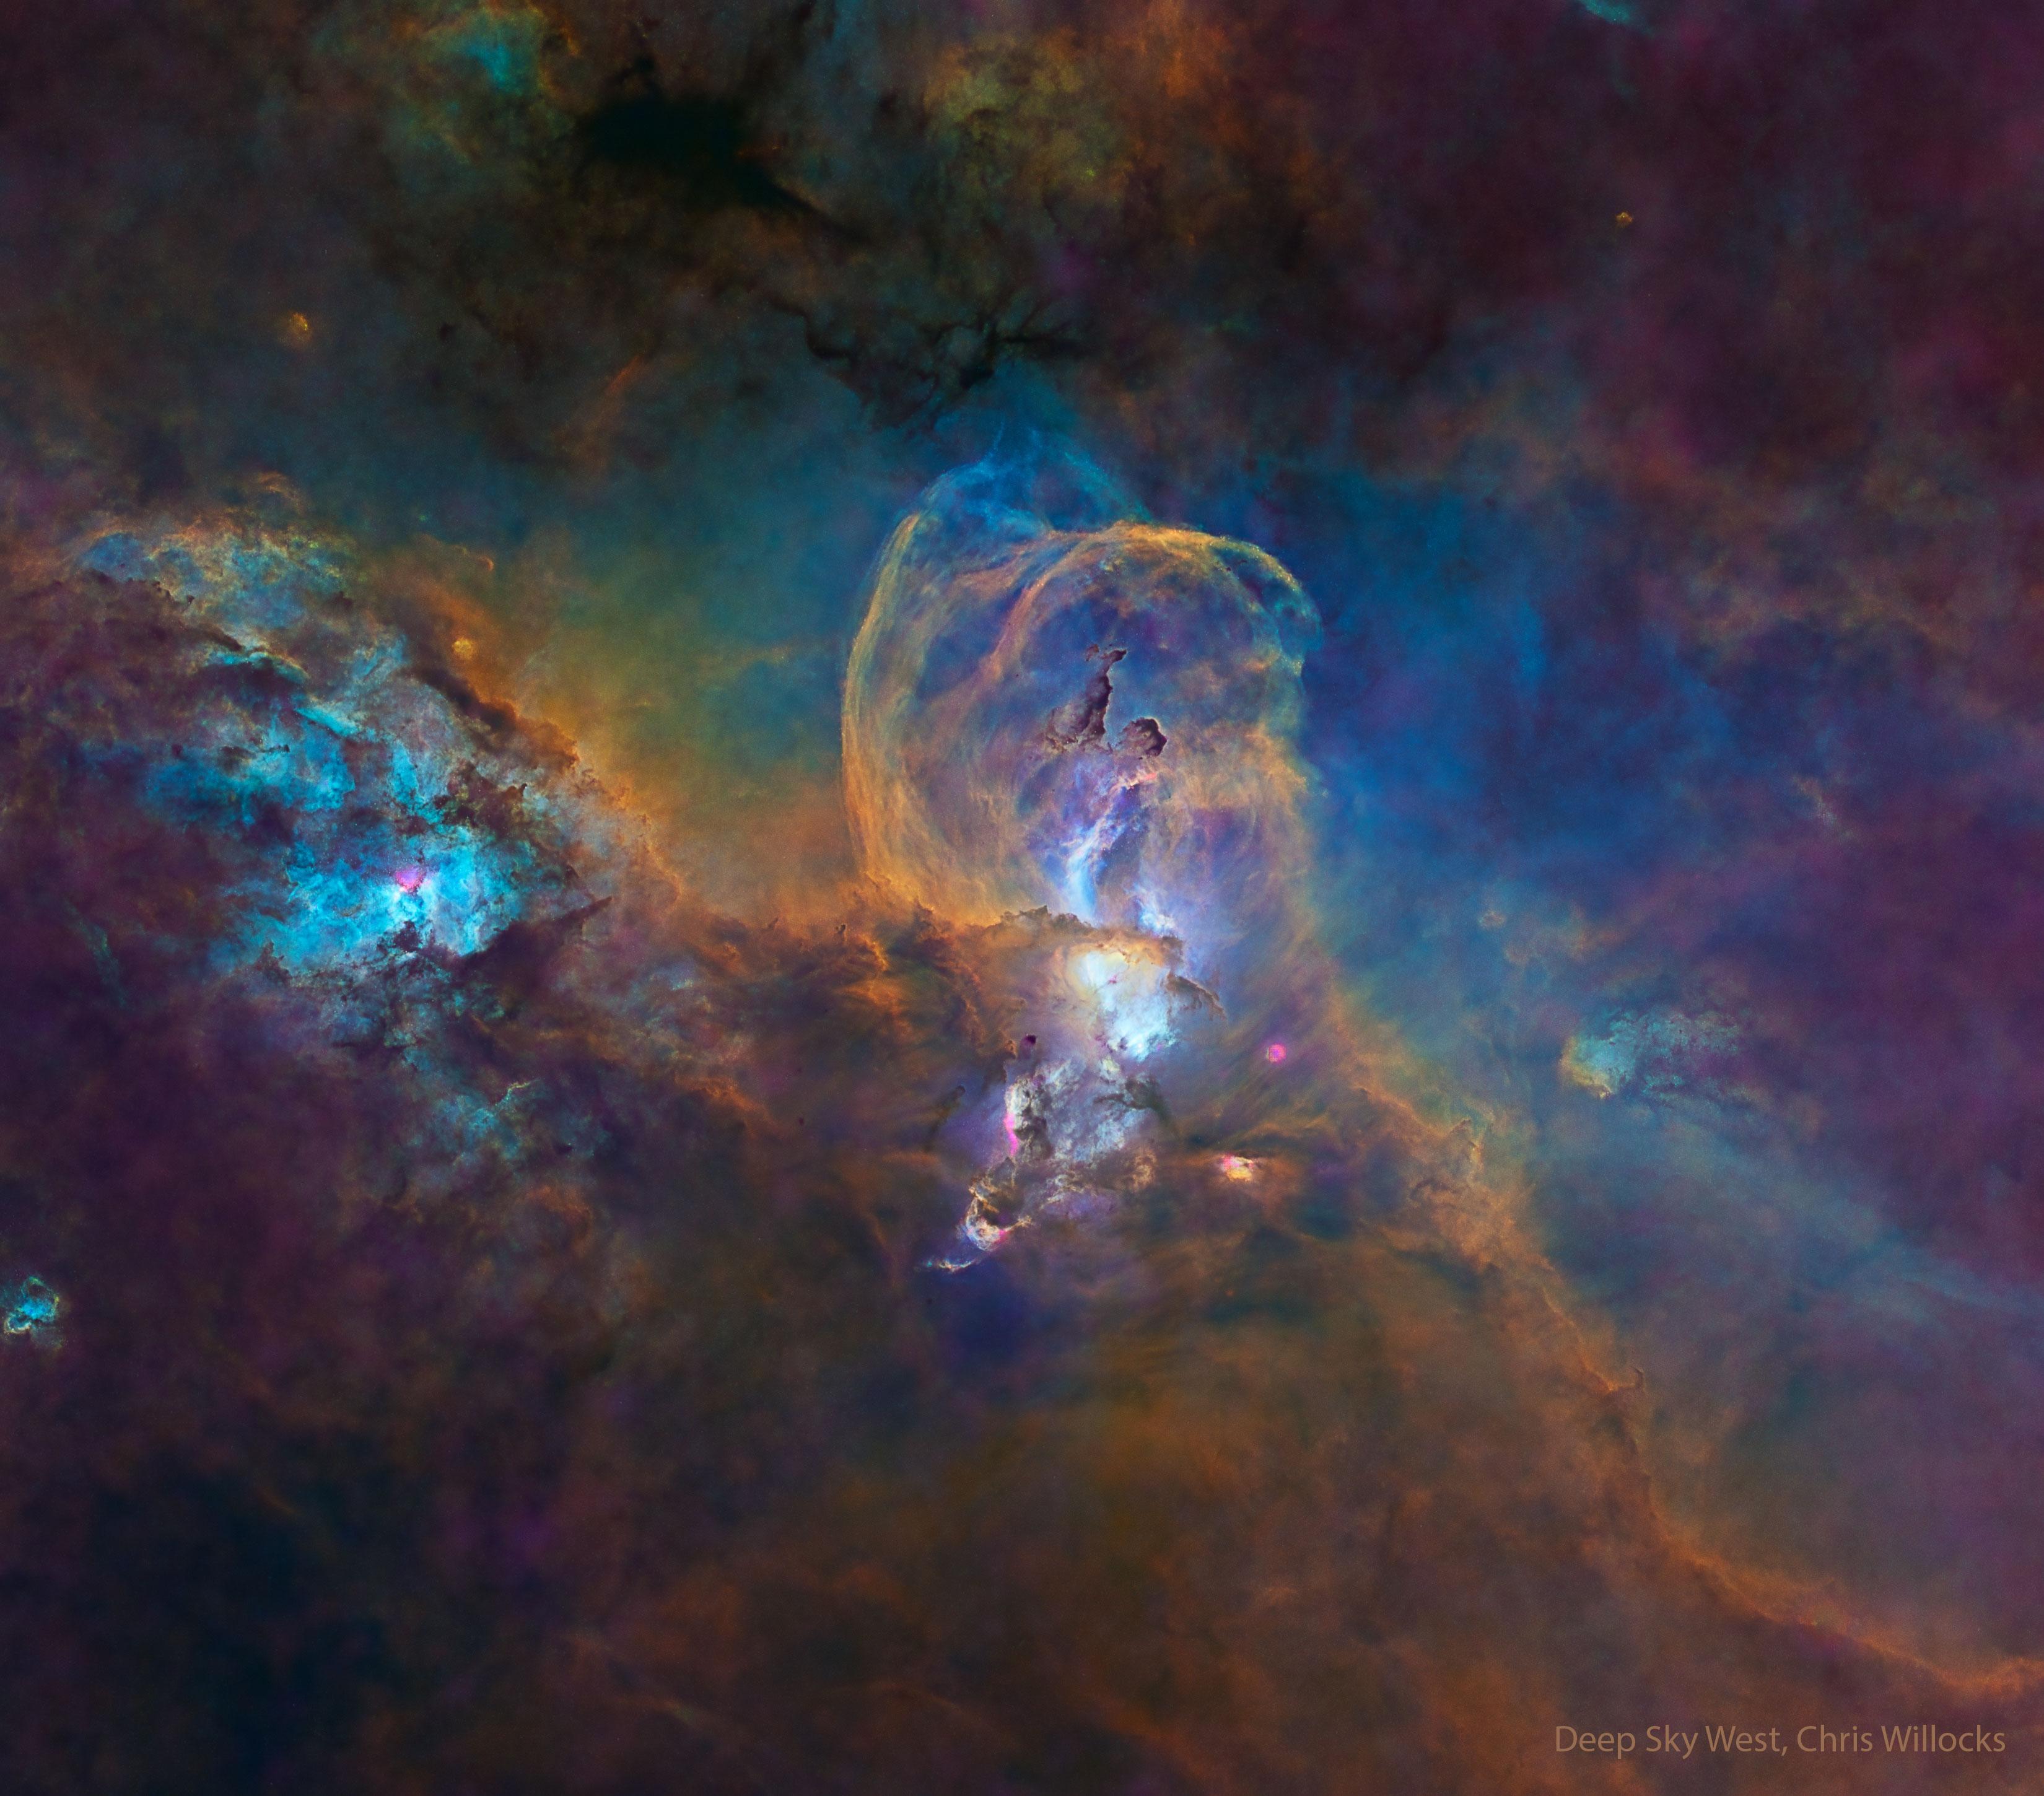 منطقة التشكّل النجمي إن‌جي‌سي 3576 بعدّة ألوان زائفة. هناك بنية غبار مركزيّة قد تبدو مشابهة لتمثال الحرّية.